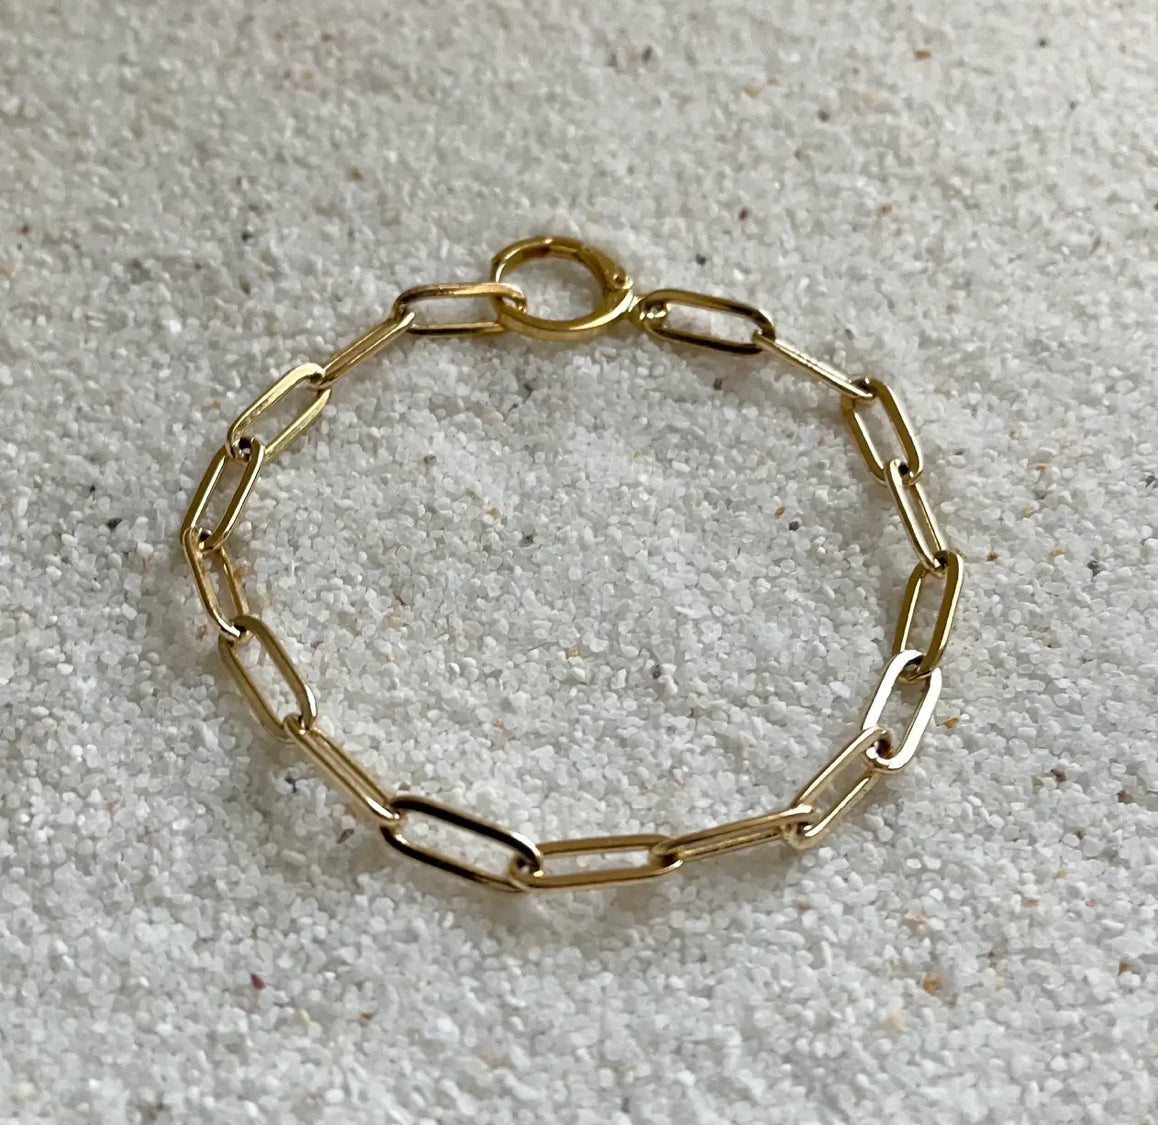 Paperclip Bracelet Gold filled